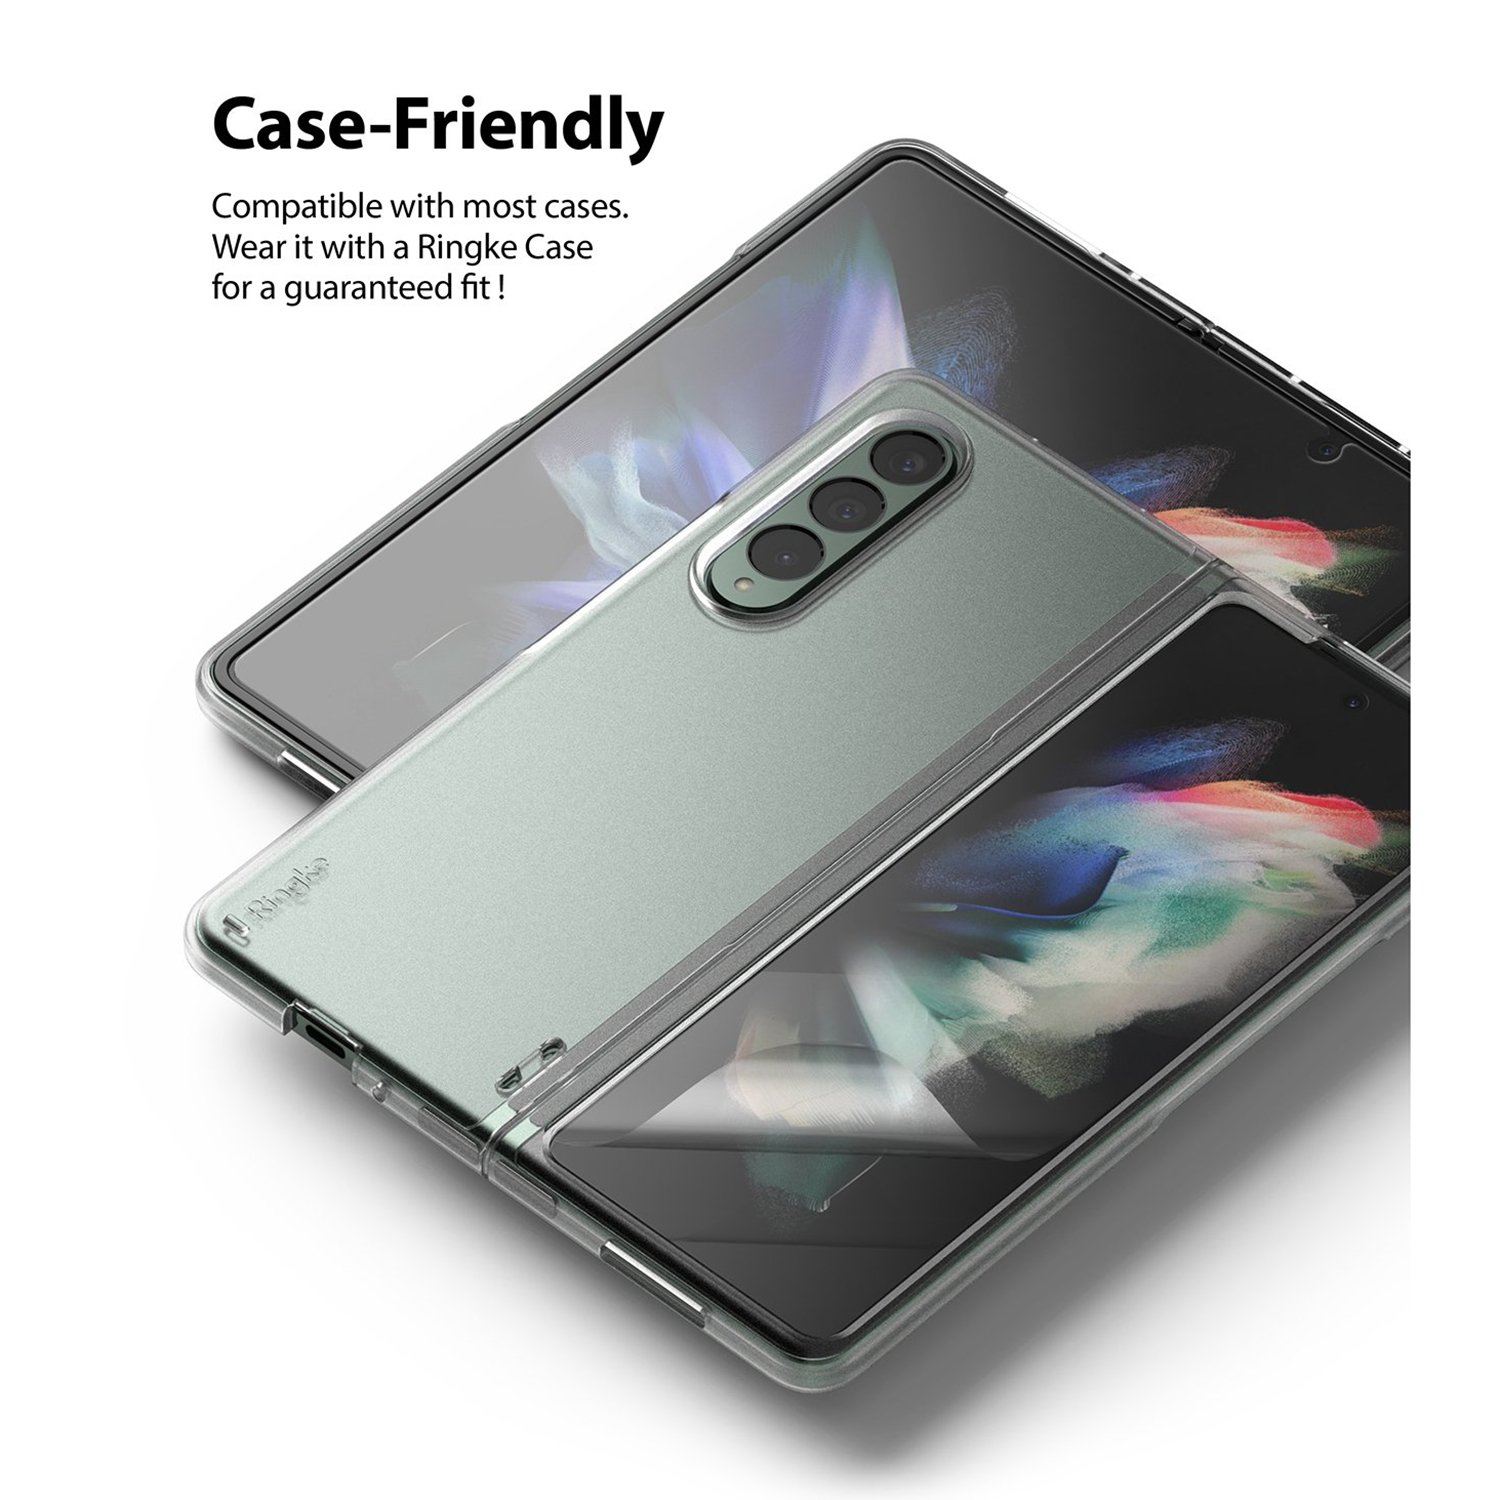 Ringke Invisible Defender for Samsung Galaxy Z Fold 3(Front + Black) Default Ringke 